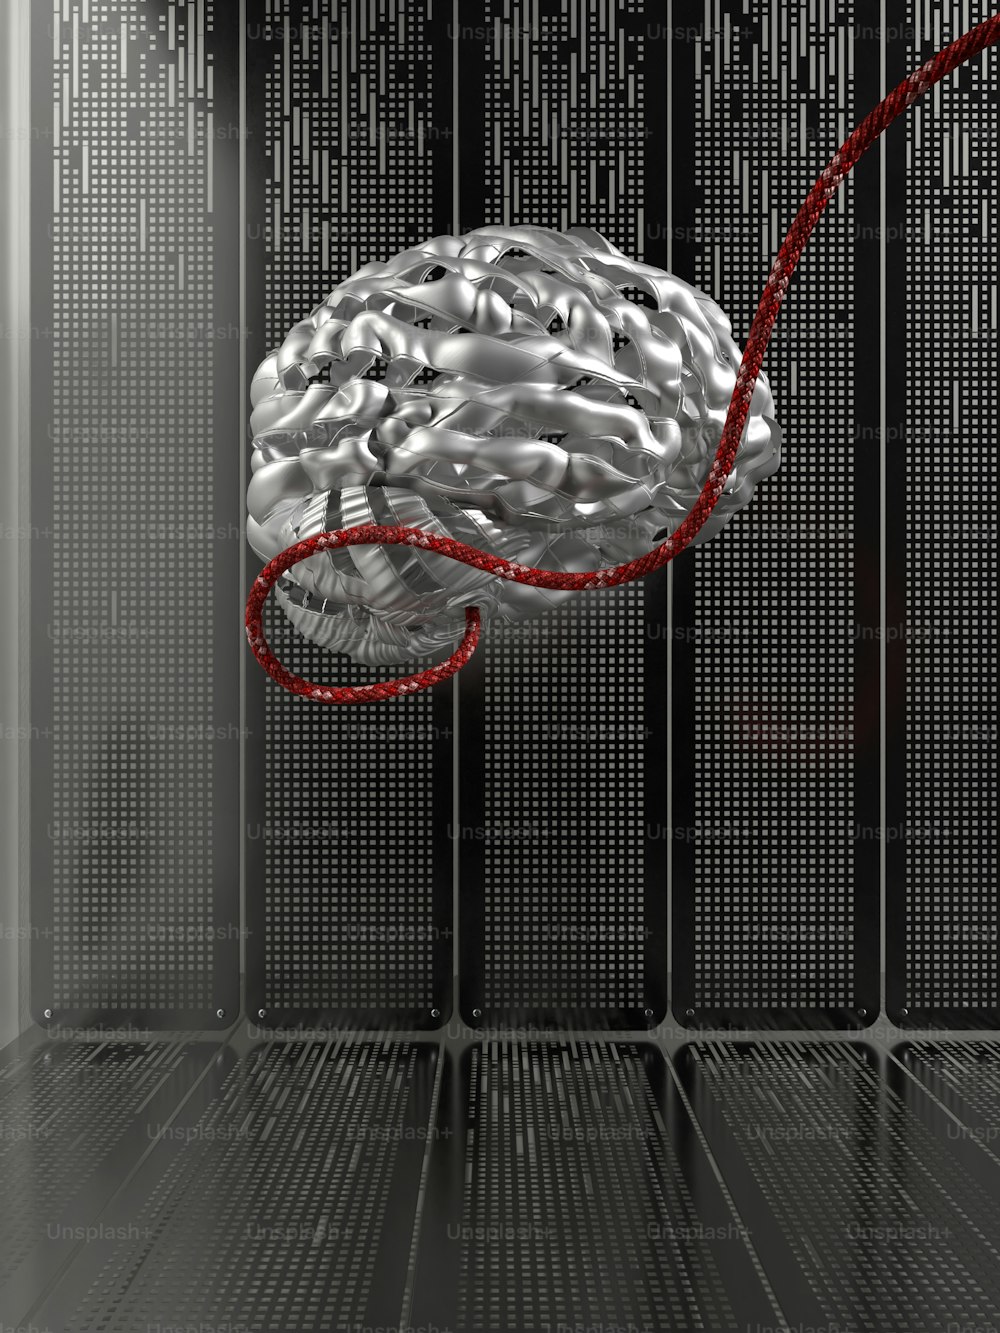 빨간 코드가 연결된 서버 룸의 뇌